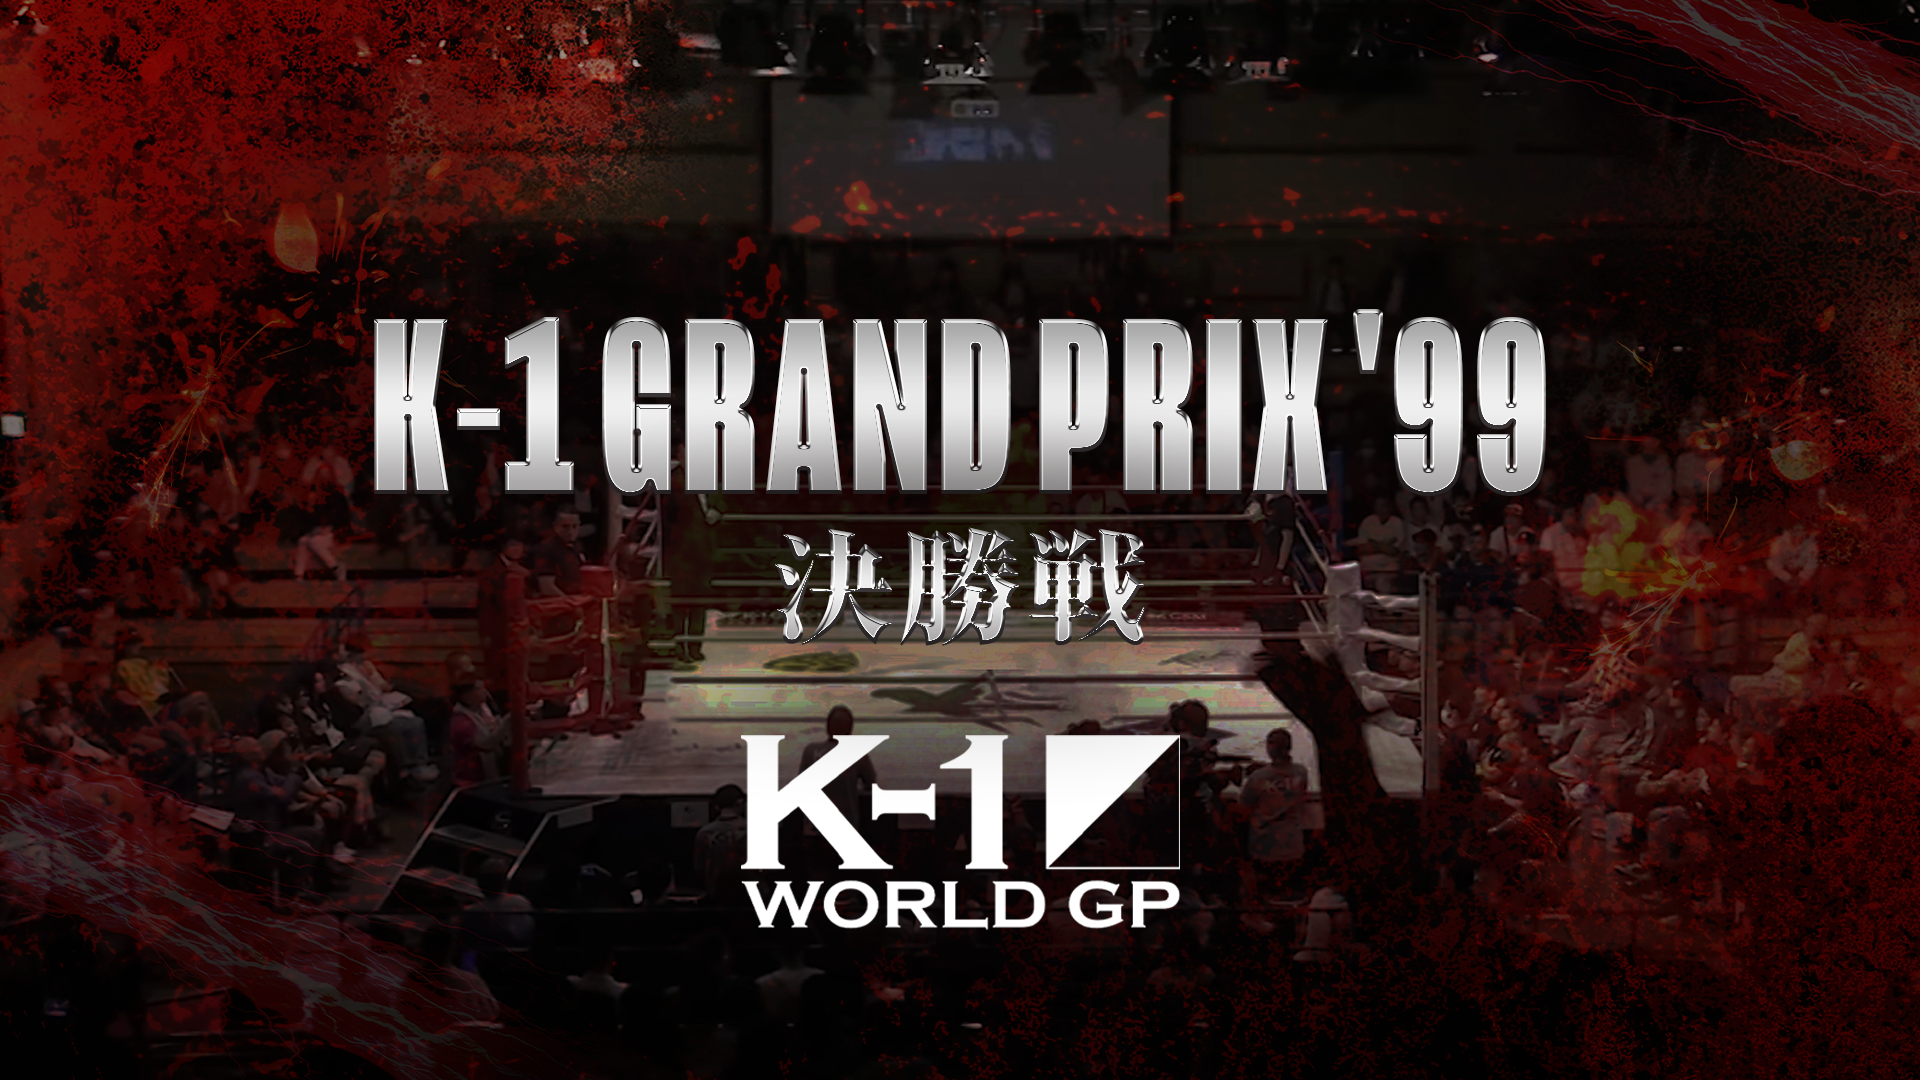 K-1 WORLD GP 2001 in 東京ドーム VHS :20221027005134-00114us:ゲイボルグ商会 - 通販 -  Yahoo!ショッピング - その他